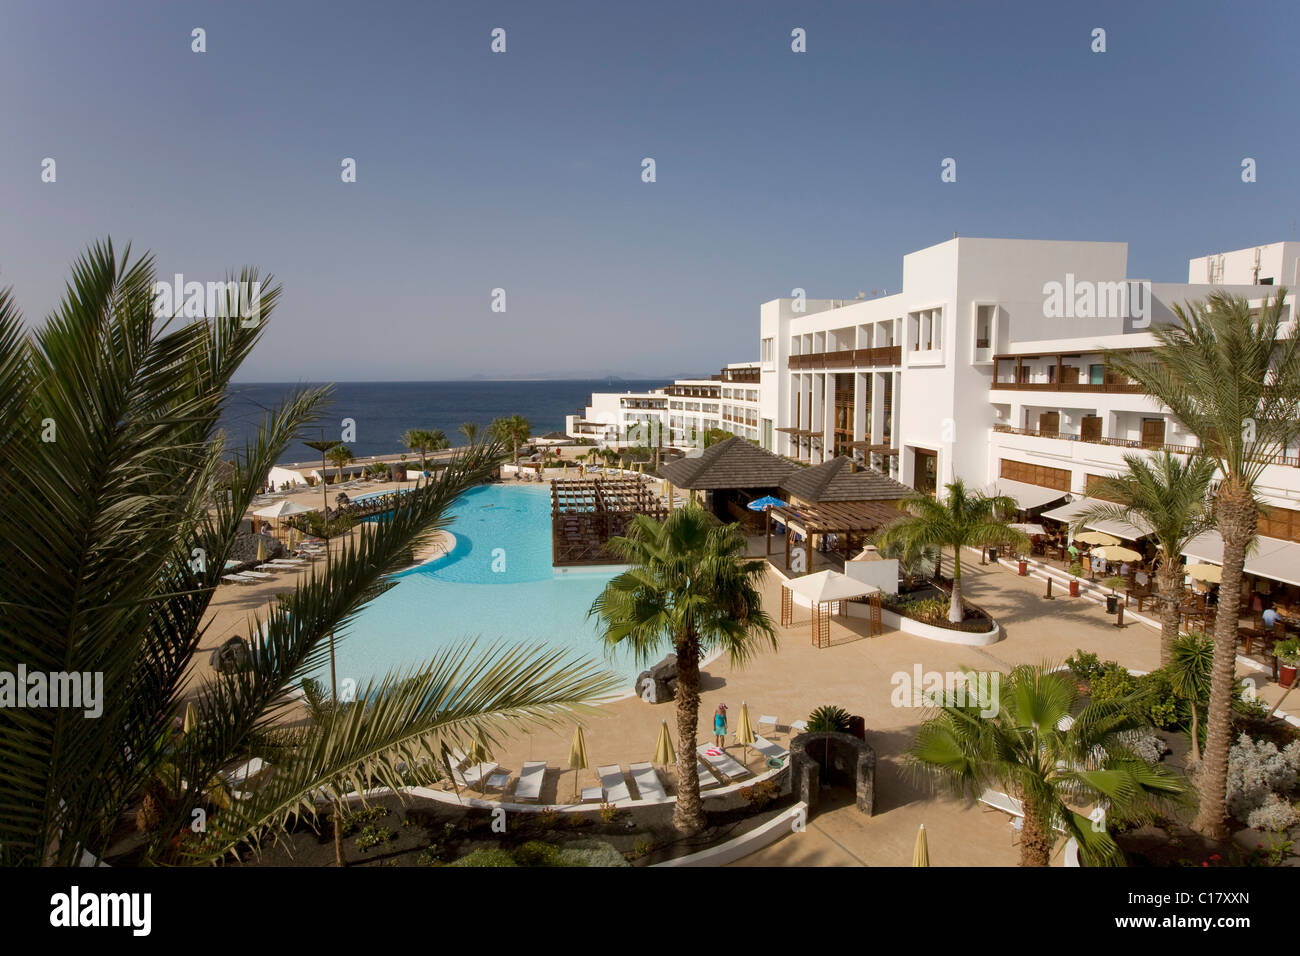 La piscina del Hotel Hesperia Lanzarote, Costa Calero, Lanzarote, Islas  Canarias, España, Europa Fotografía de stock - Alamy